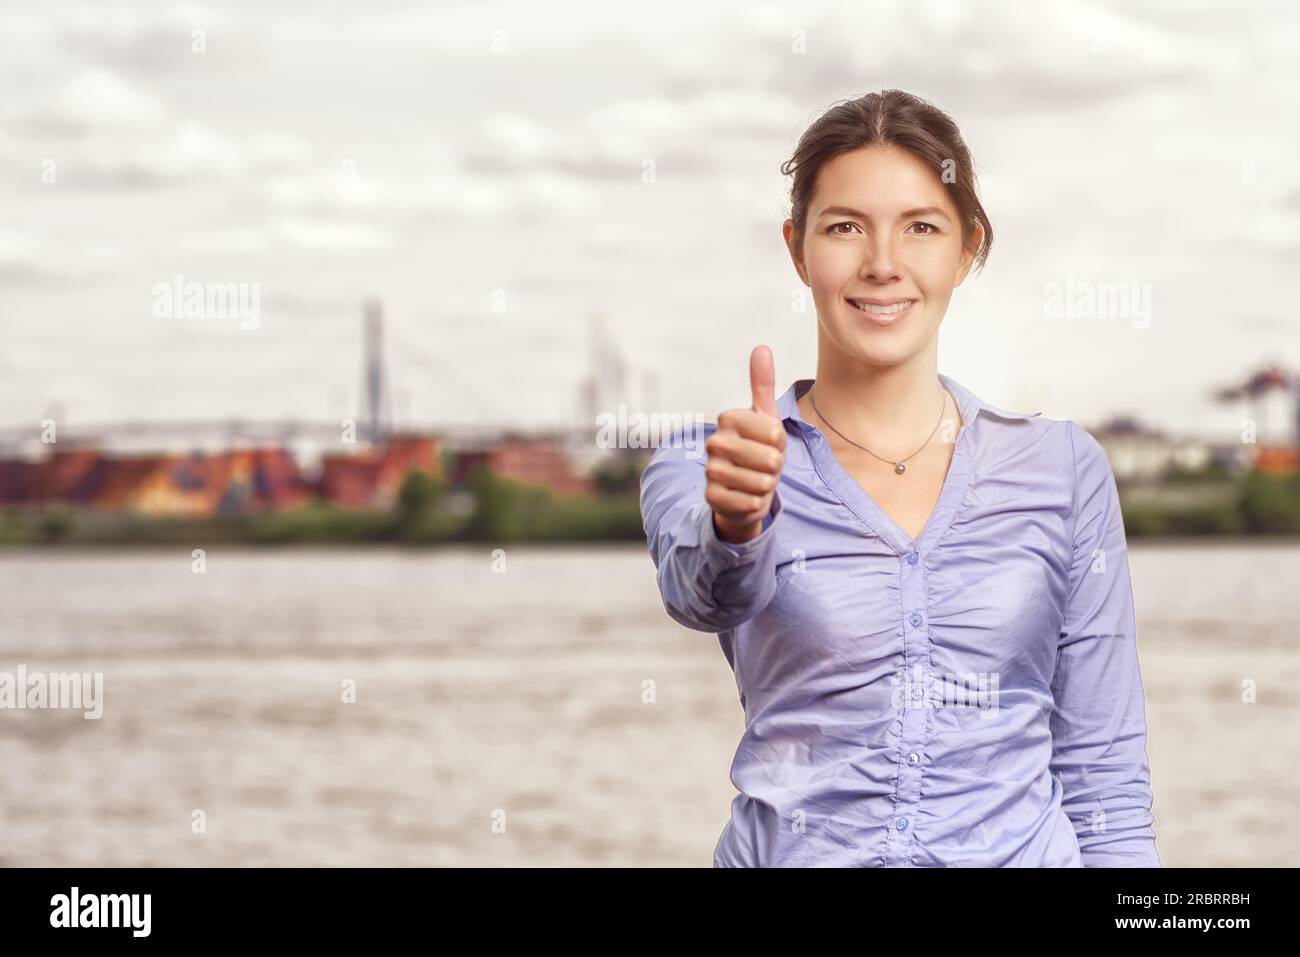 Donna felice sorridente e attraente con un pollice verso l'alto gesto di successo e approvazione, ritratto della parte superiore del corpo davanti a un fiume urbano o a un corso d'acqua Foto Stock